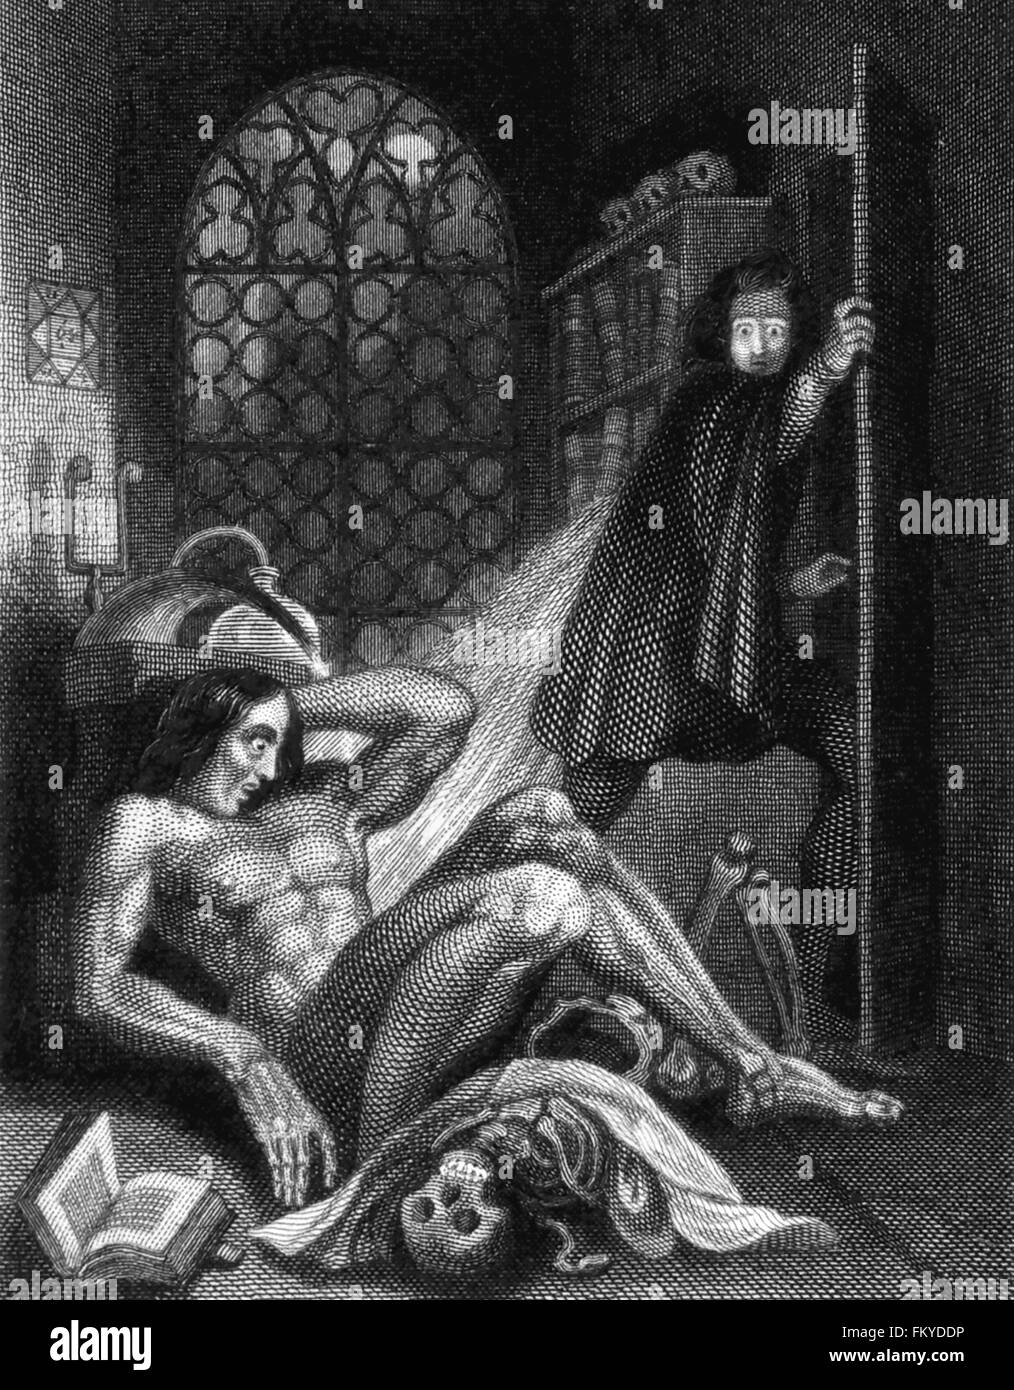 Frankenstein de Mary Shelley. Theodore von Holst la ilustración de la cubierta interior de la 3ª edición de Mary Shelley "Frankenstein", publicado en 1831. Foto de stock